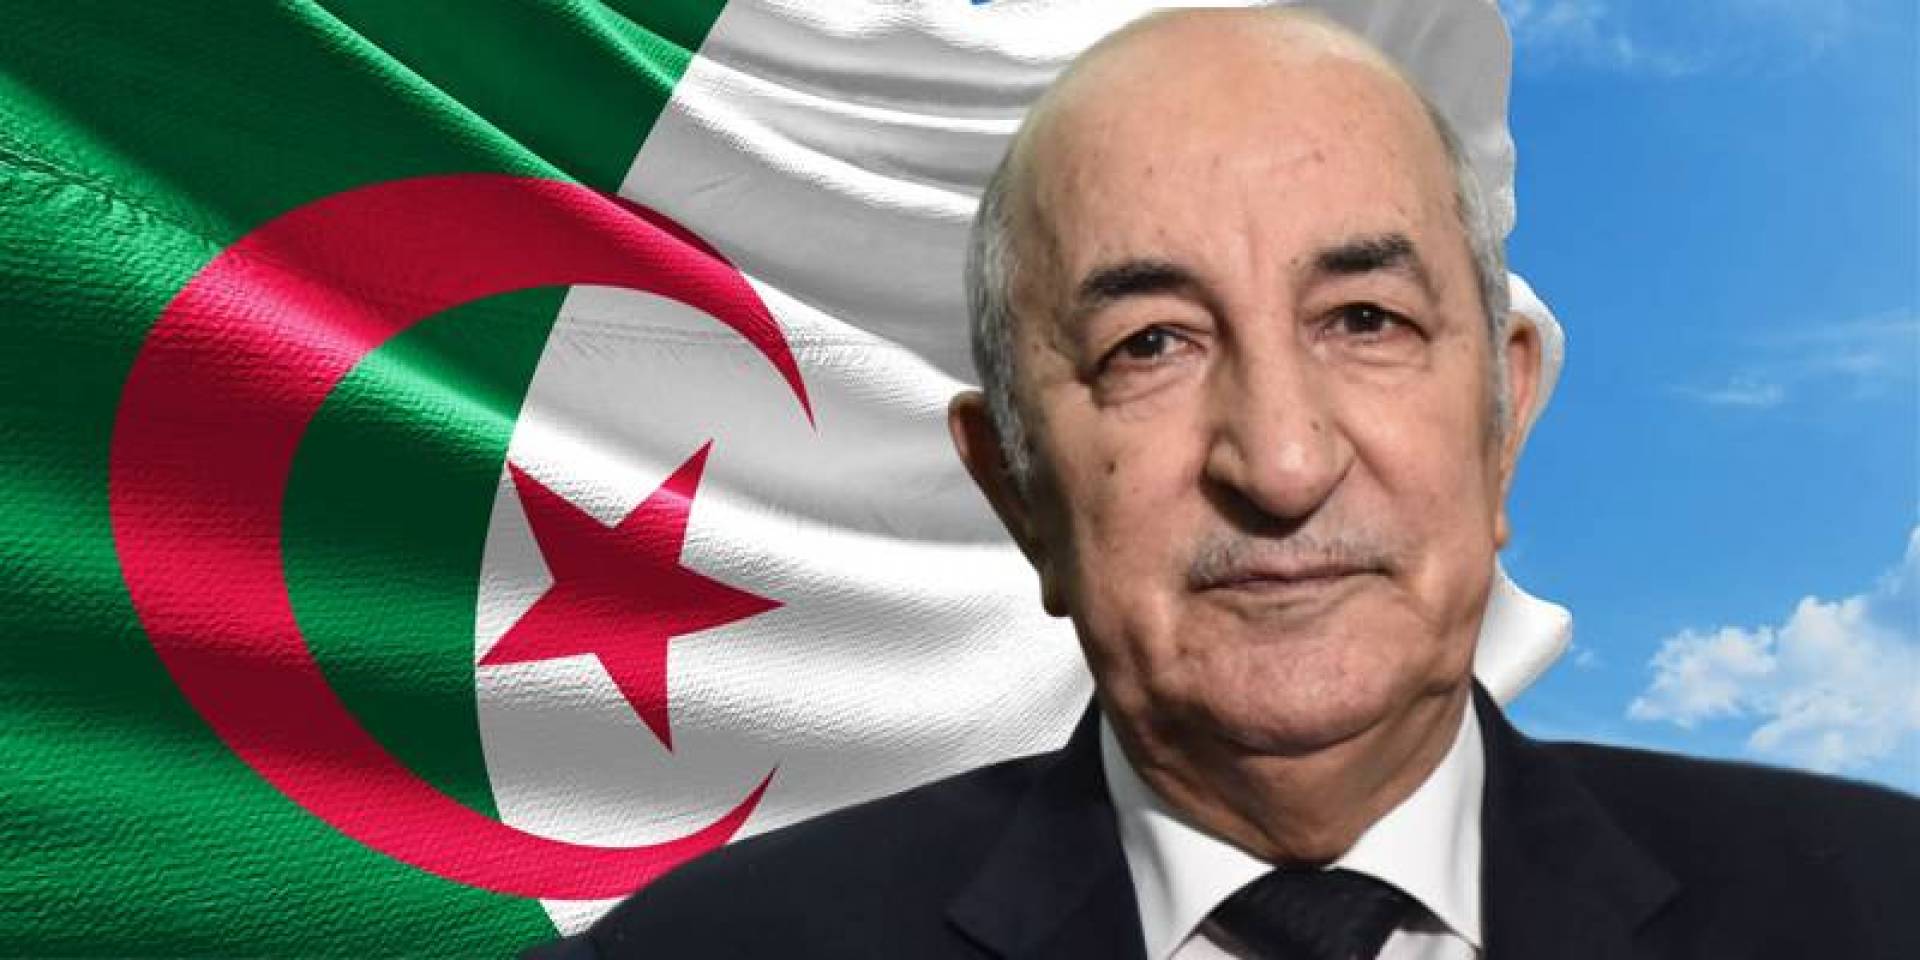   رئيس الجزائر يعود إلى بلاده بعد رحلة علاجية بألمانيا